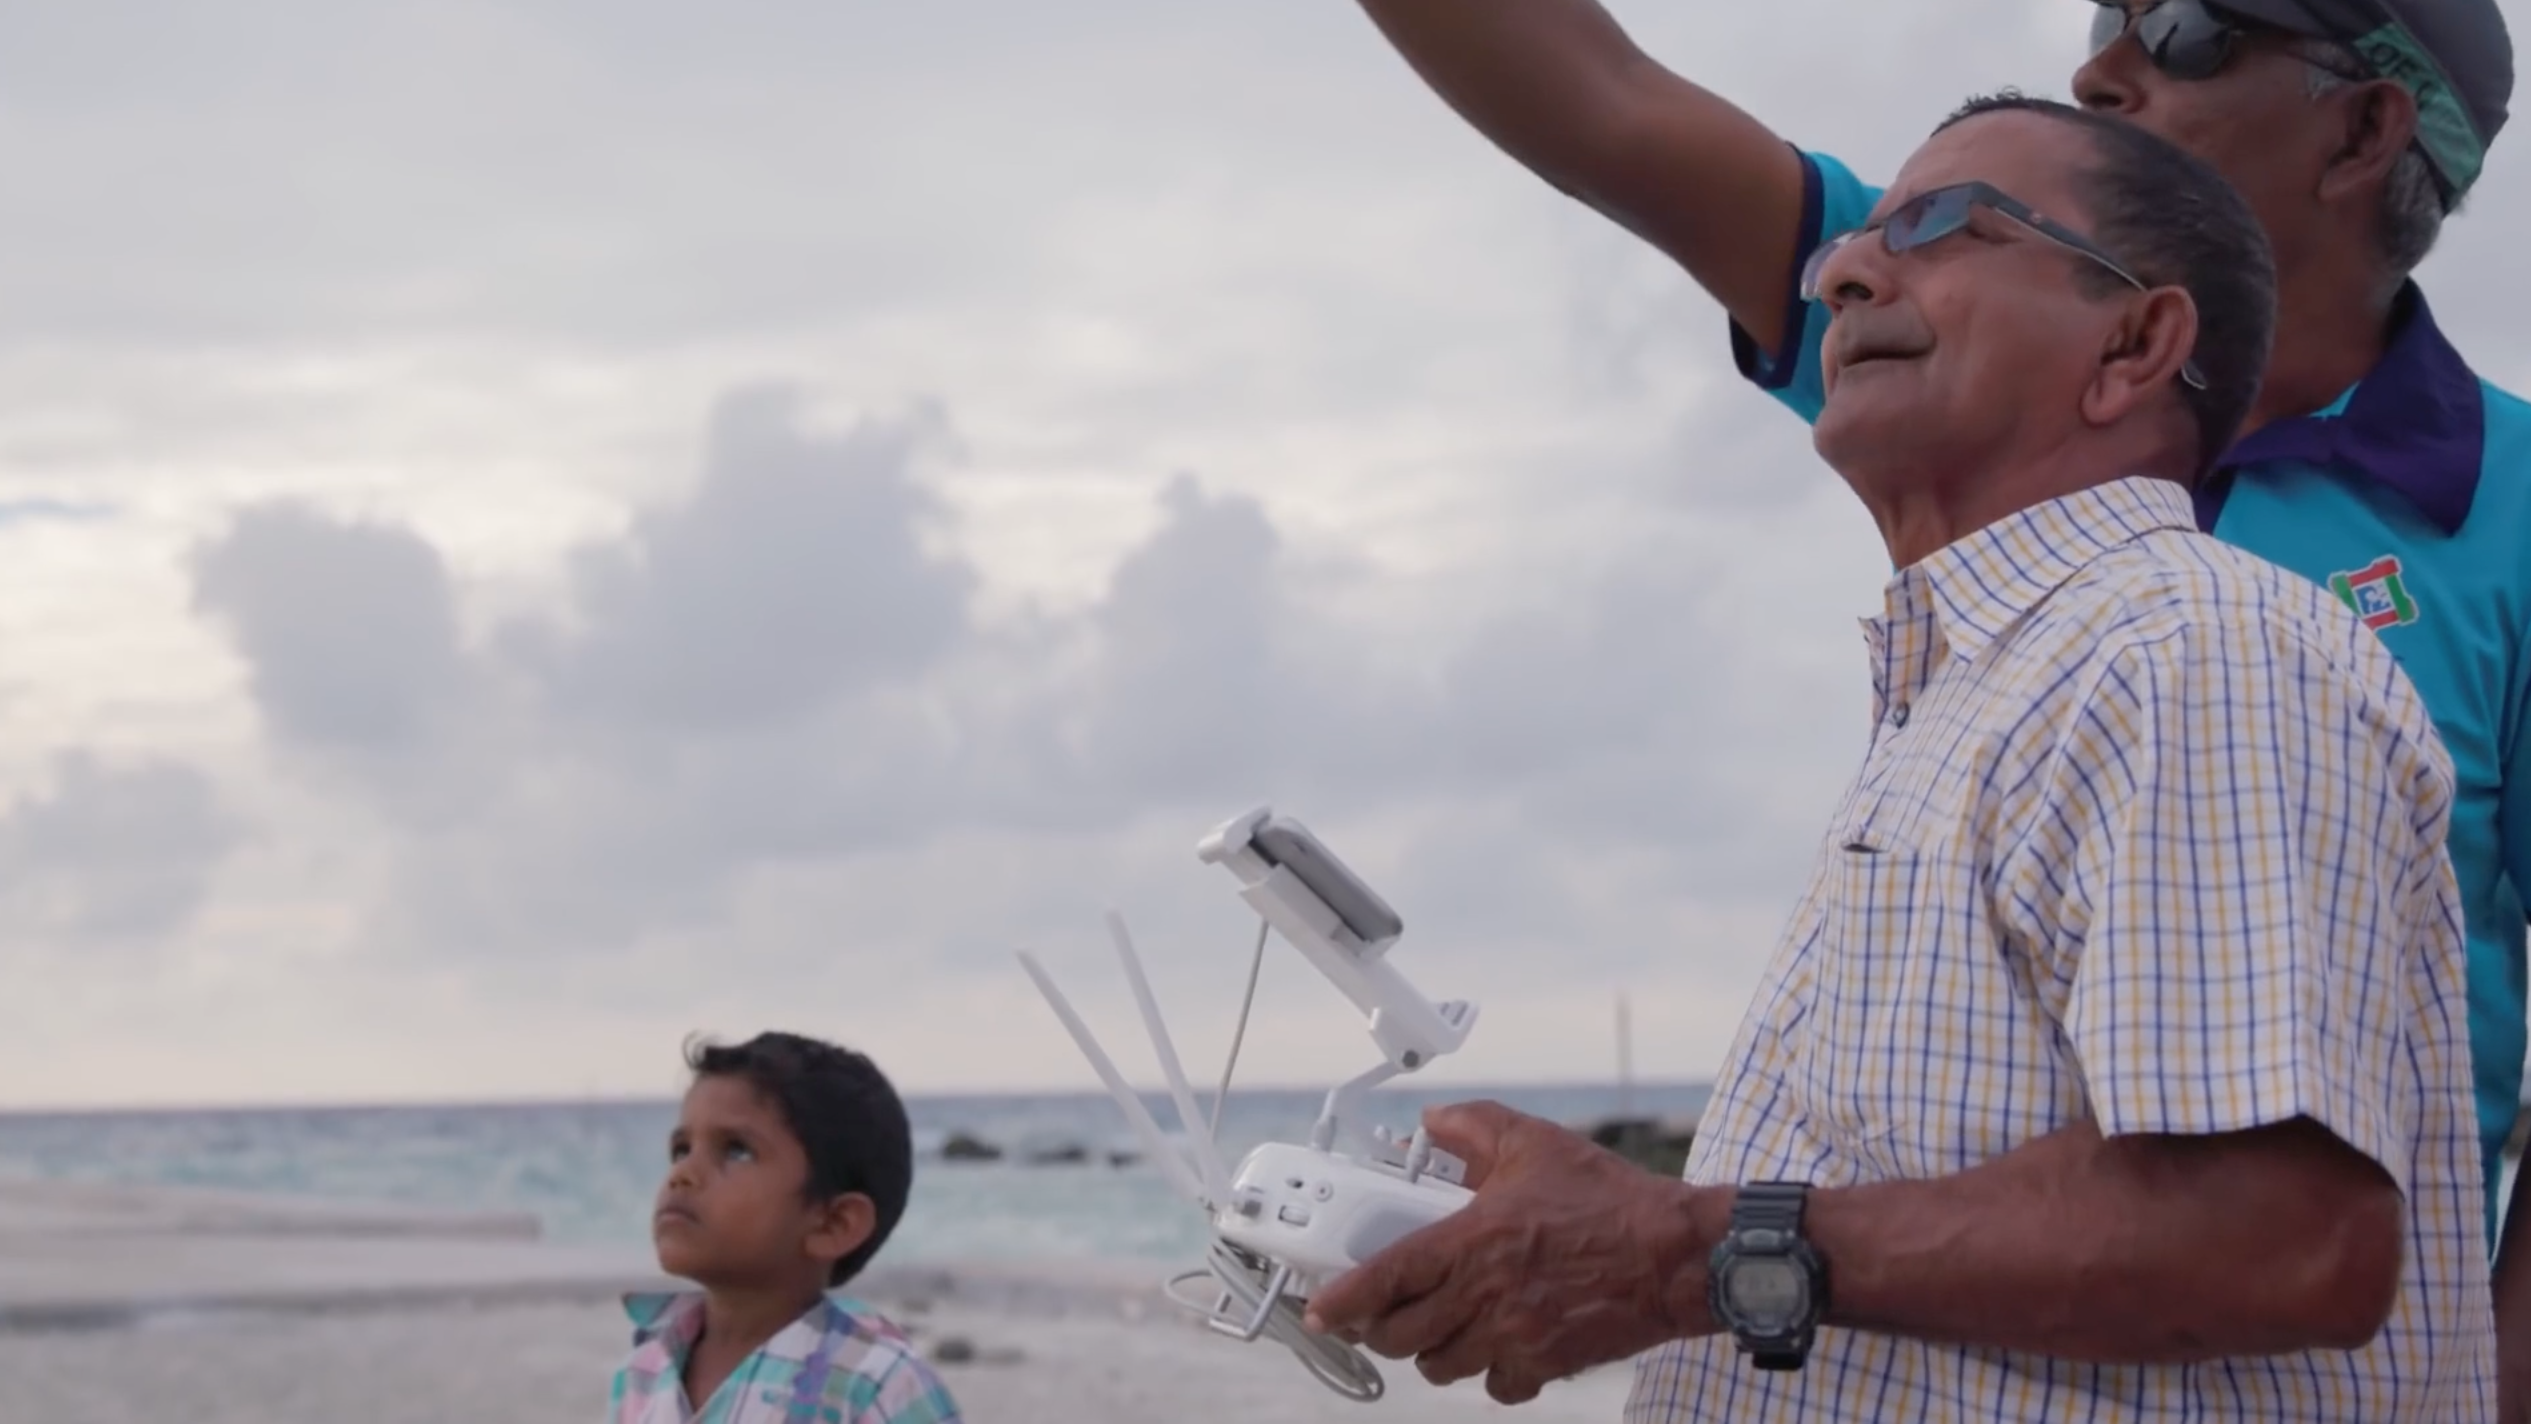 DJI Stories – Mapping the Maldives